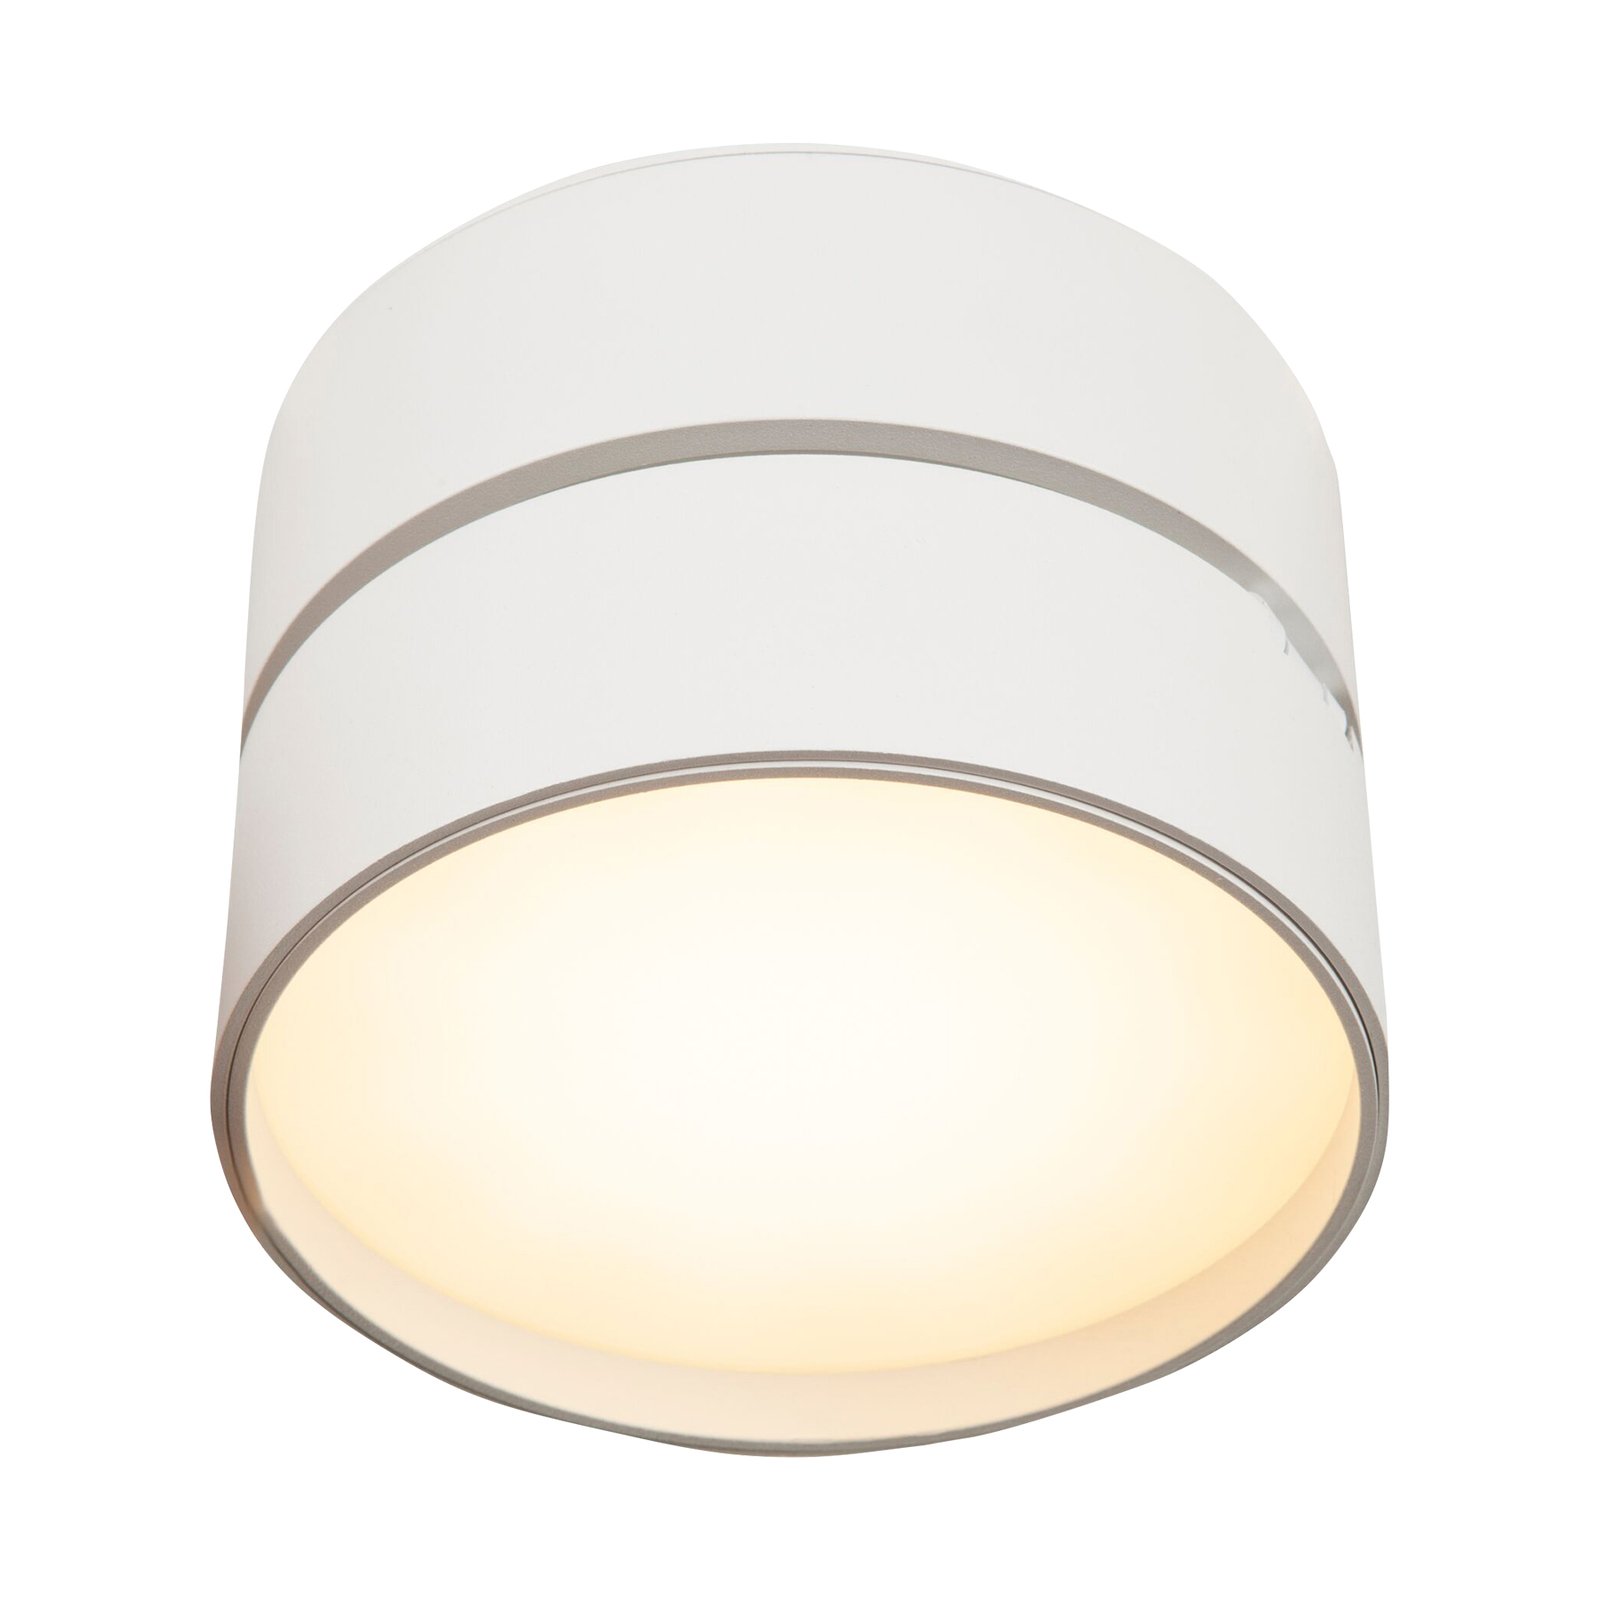 Maytoni Onda lampa sufitowa LED, 3 000K 19W, biała